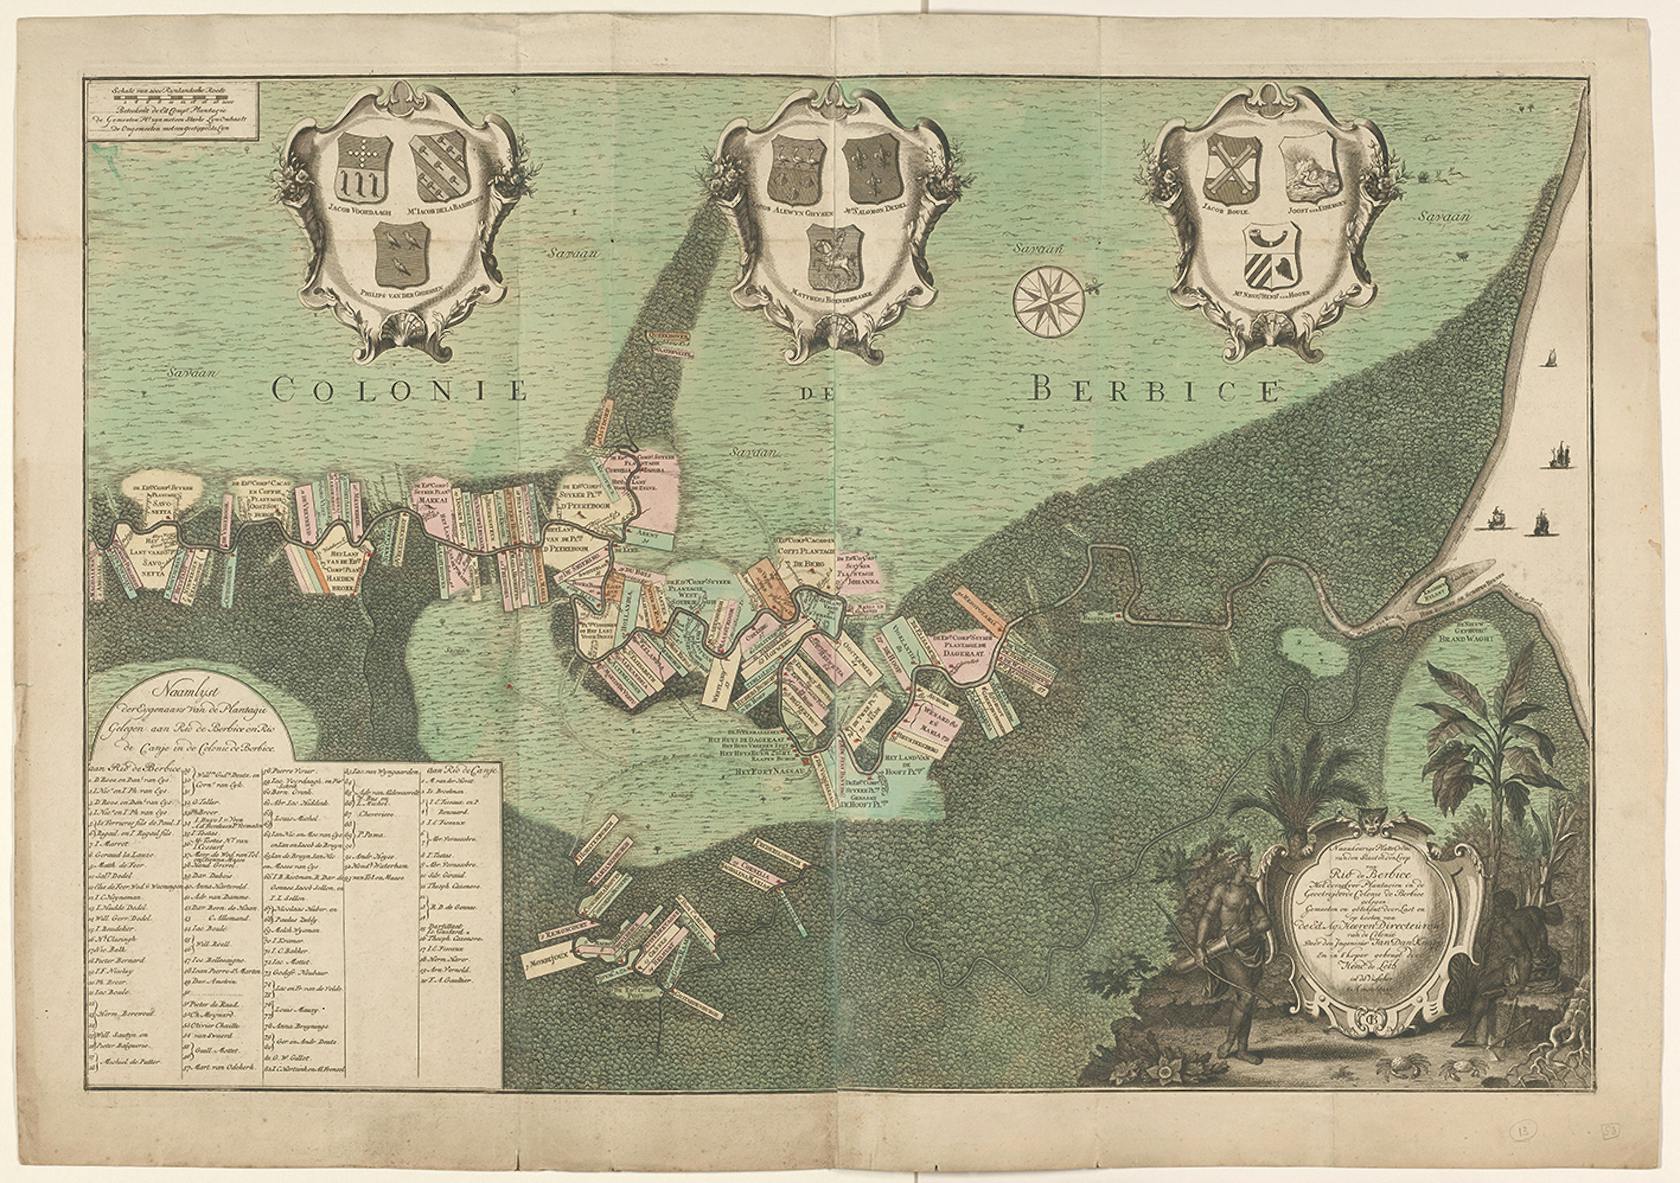 Plattegrond van Berbice, met wapens en namen van Nederlandse plantage-eigenaren. Ets en gravure door Jan Daniël Knapp, 1742.